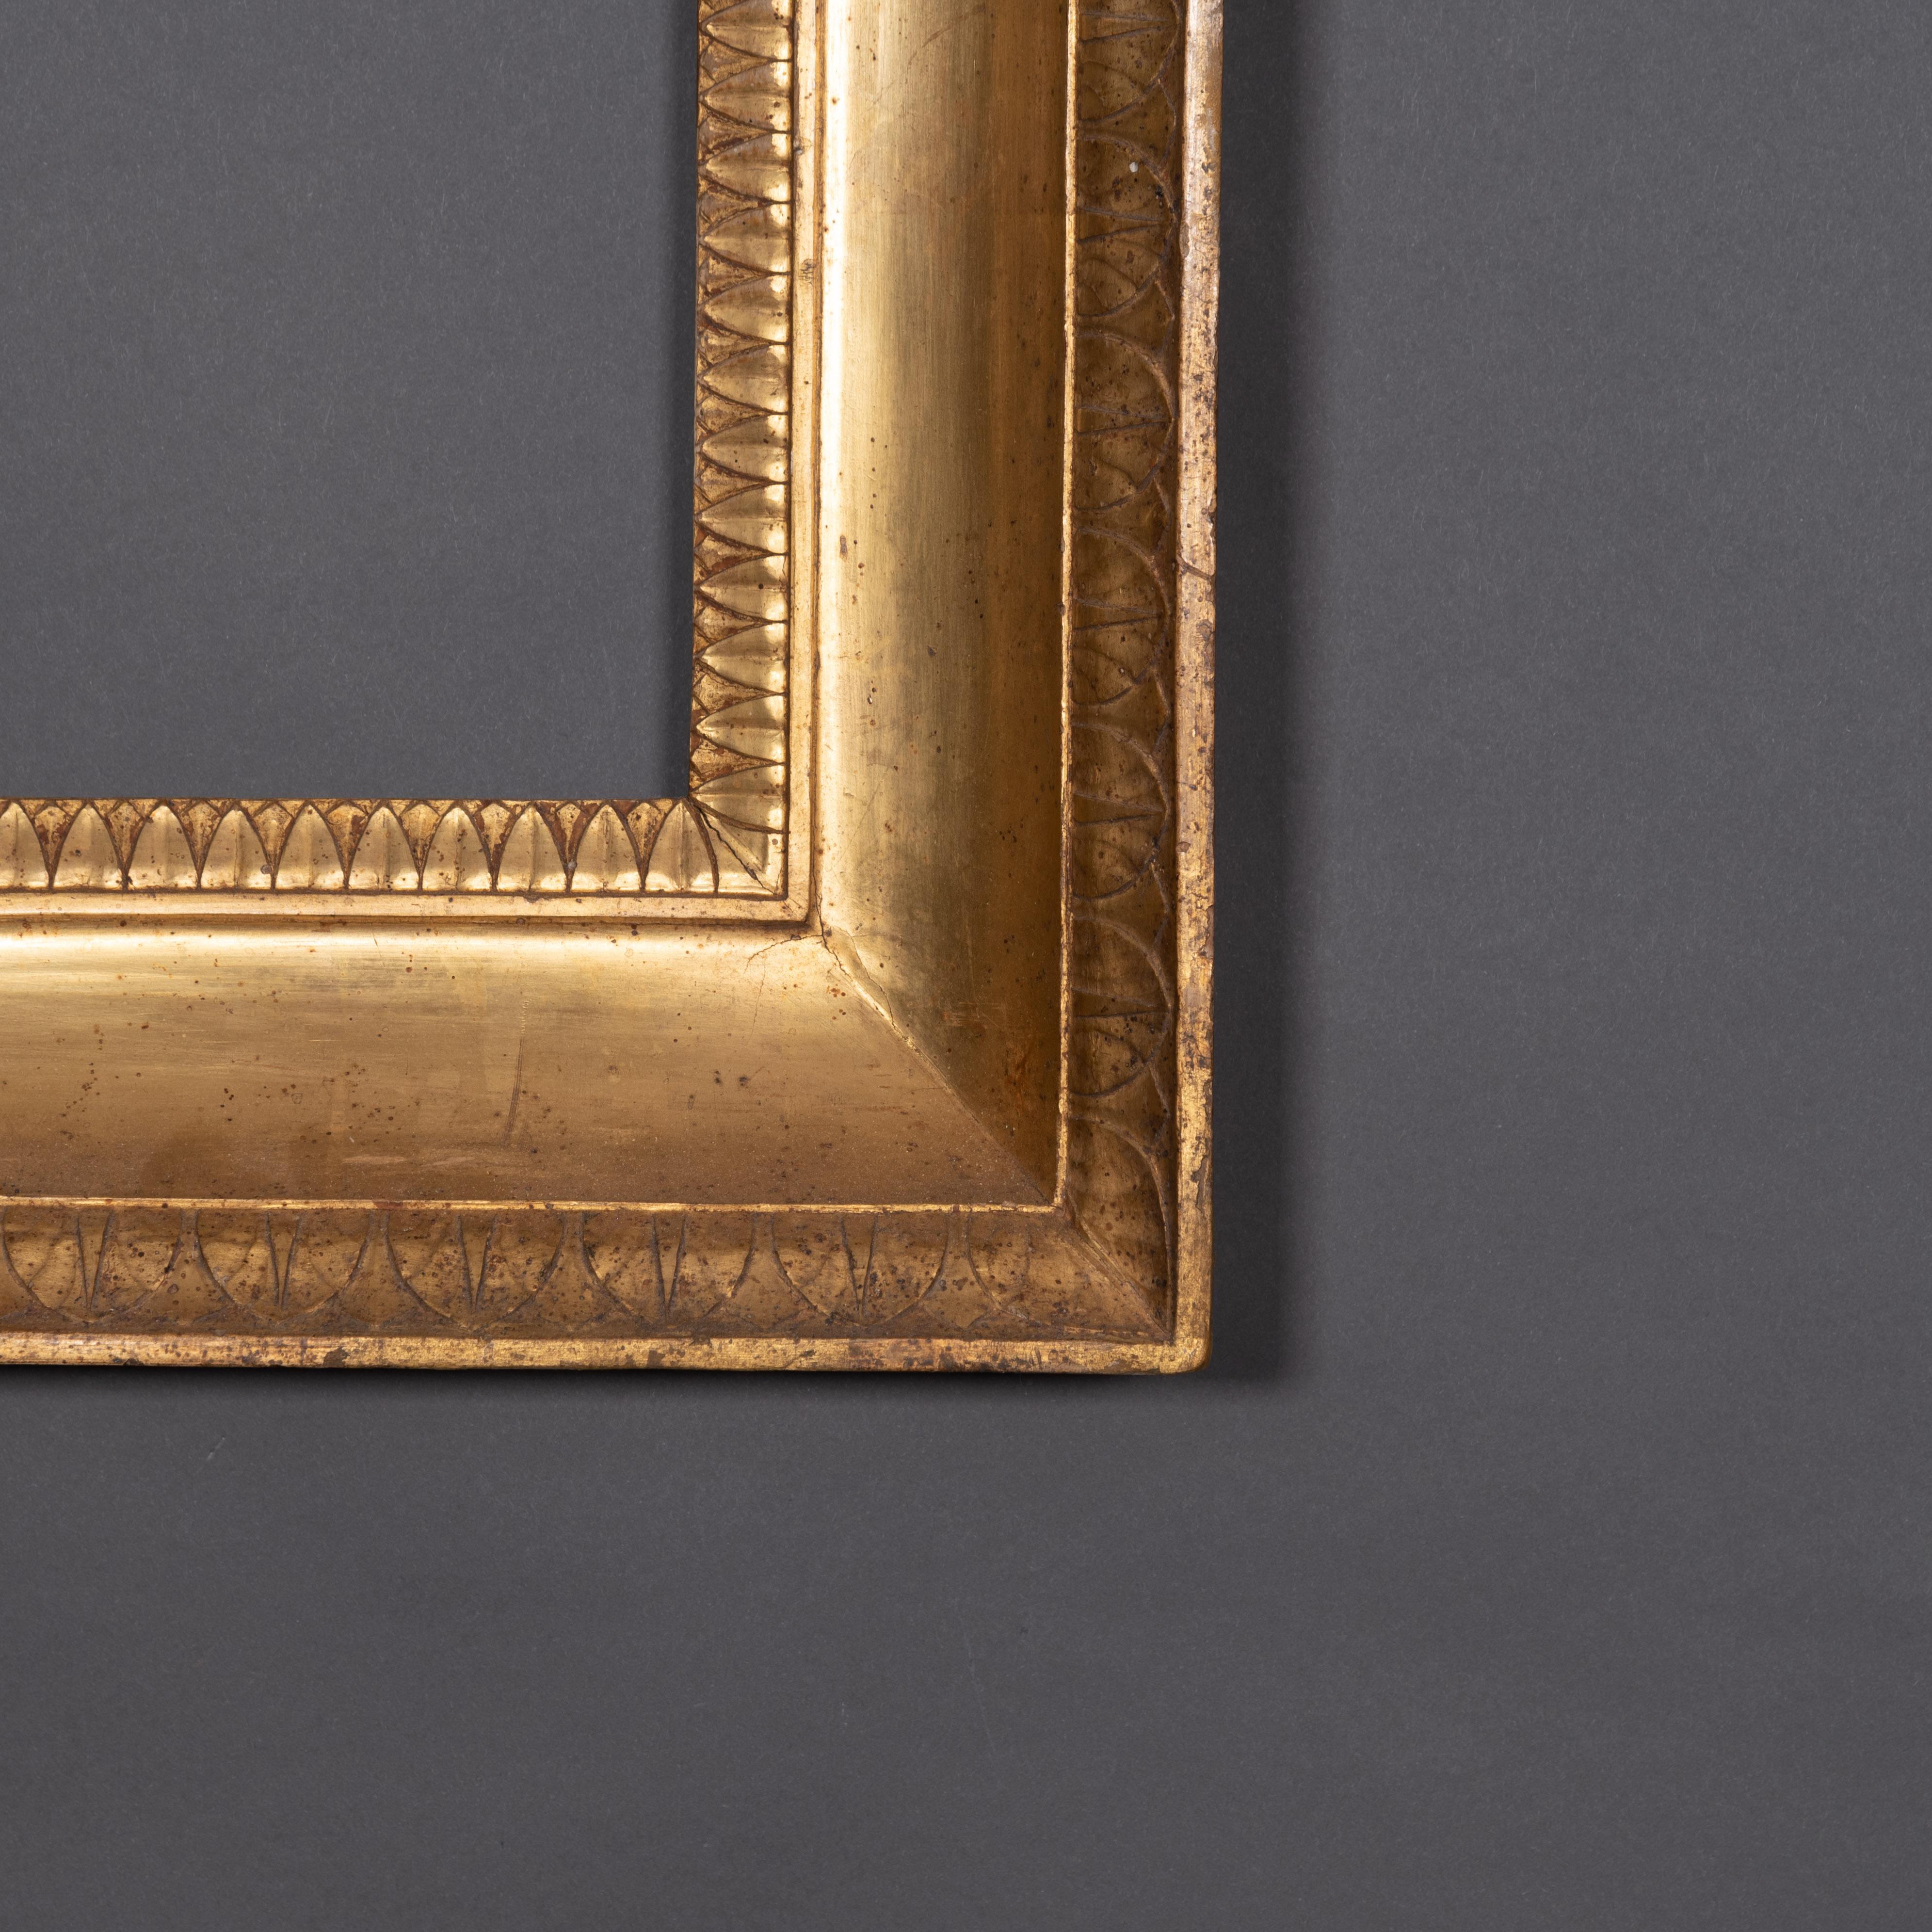 Wunderschöner italienischer Empire-Rahmen aus vergoldetem Holz mit zwei Reihen von Schnitzereien
Anfang des 19. Jahrhunderts 
Innenmaße cm 58,5 x 47

Jeder Artikel unserer Galerie wird auf Anfrage von einem Echtheitszertifikat begleitet, das von